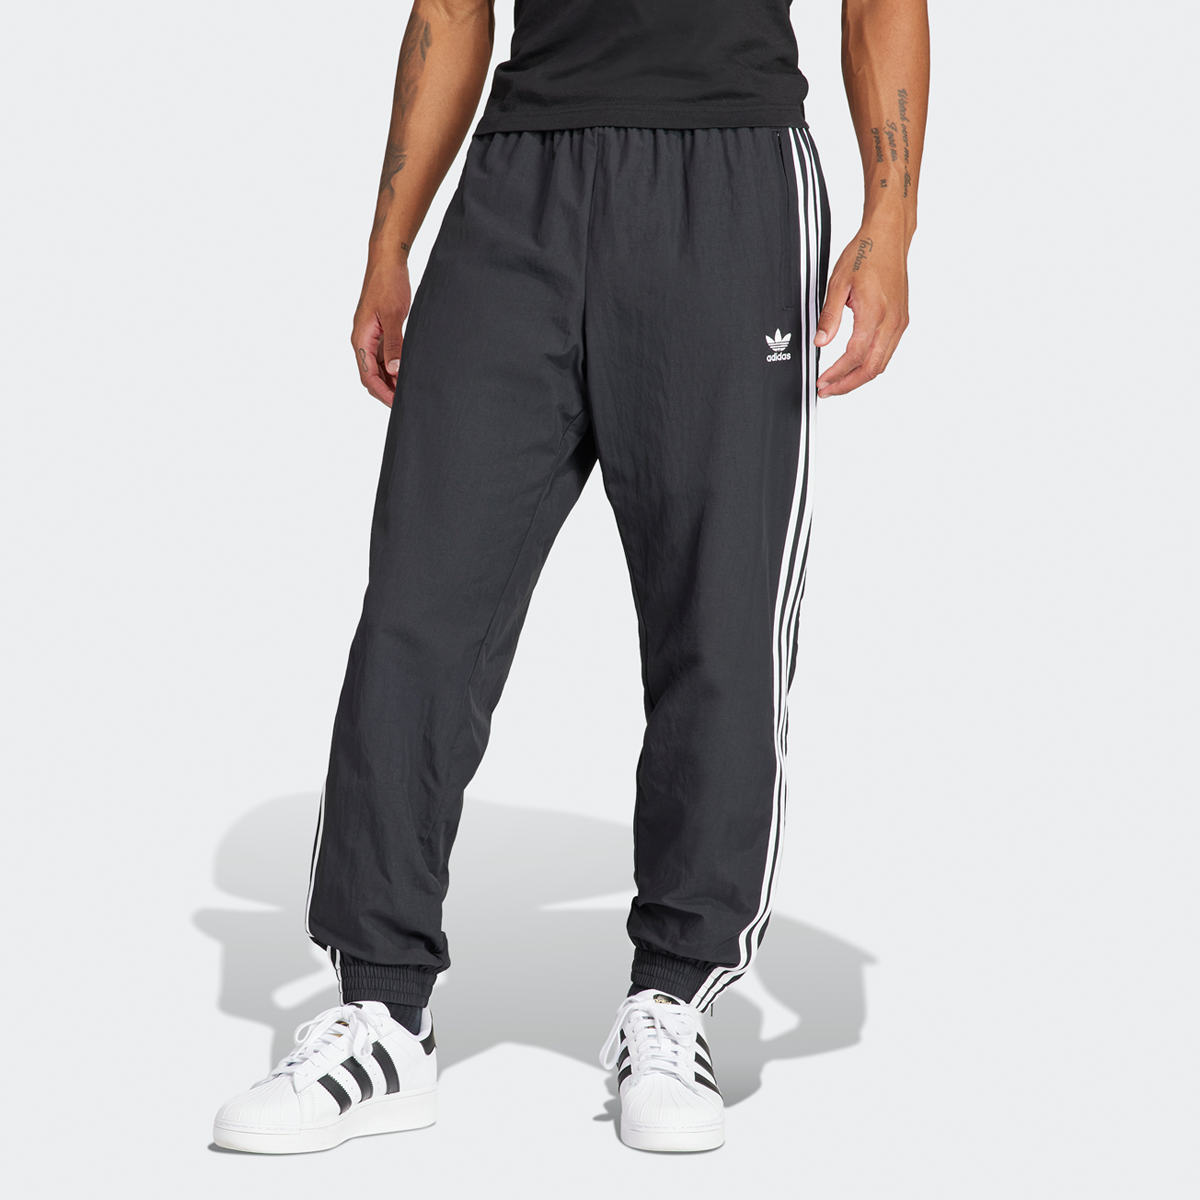 Adidas Originals 3-stripes Woven Firebird Jogging Broek Trainingsbroeken Heren black maat: M beschikbare maaten:S M XL